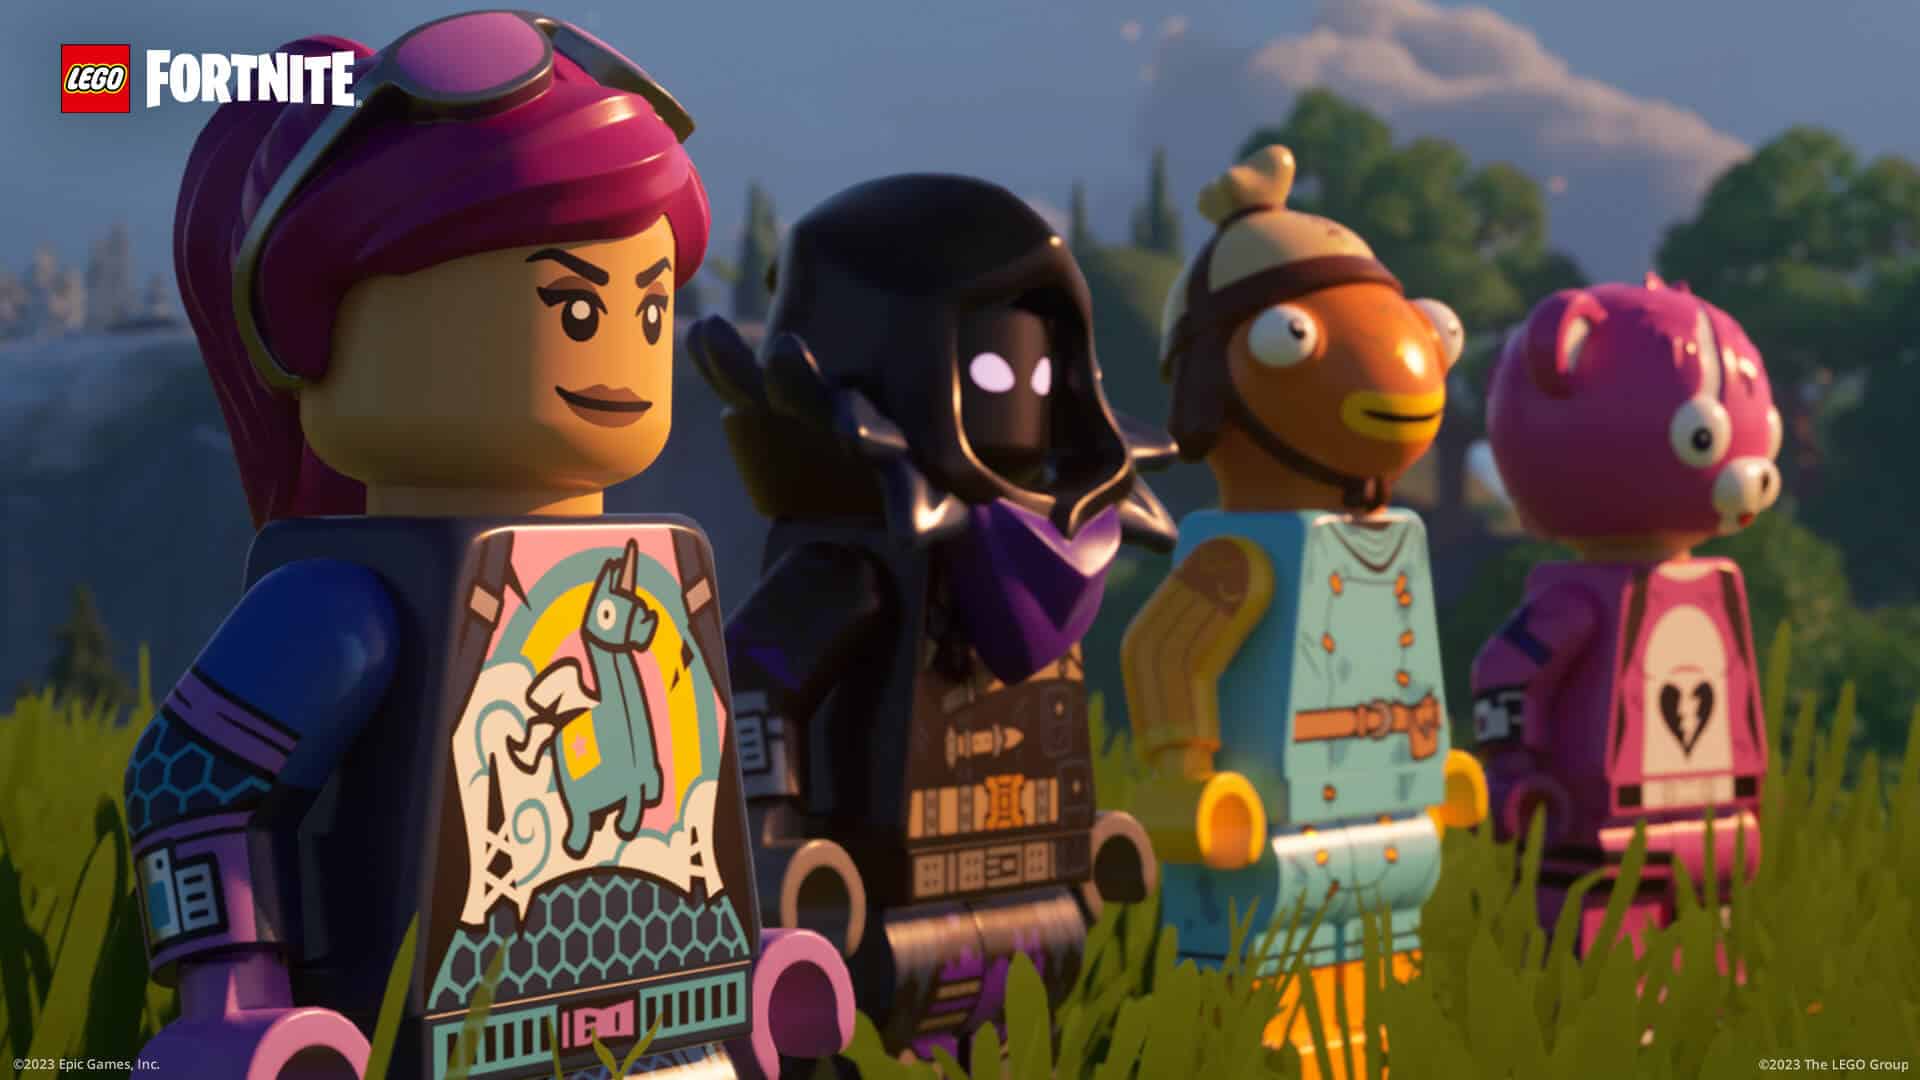 فورتنايت Fortnite تكشف عن تعاون جديد مع ليجو Lego لإطلاق لعبتين جديدتين Lego Fortnite